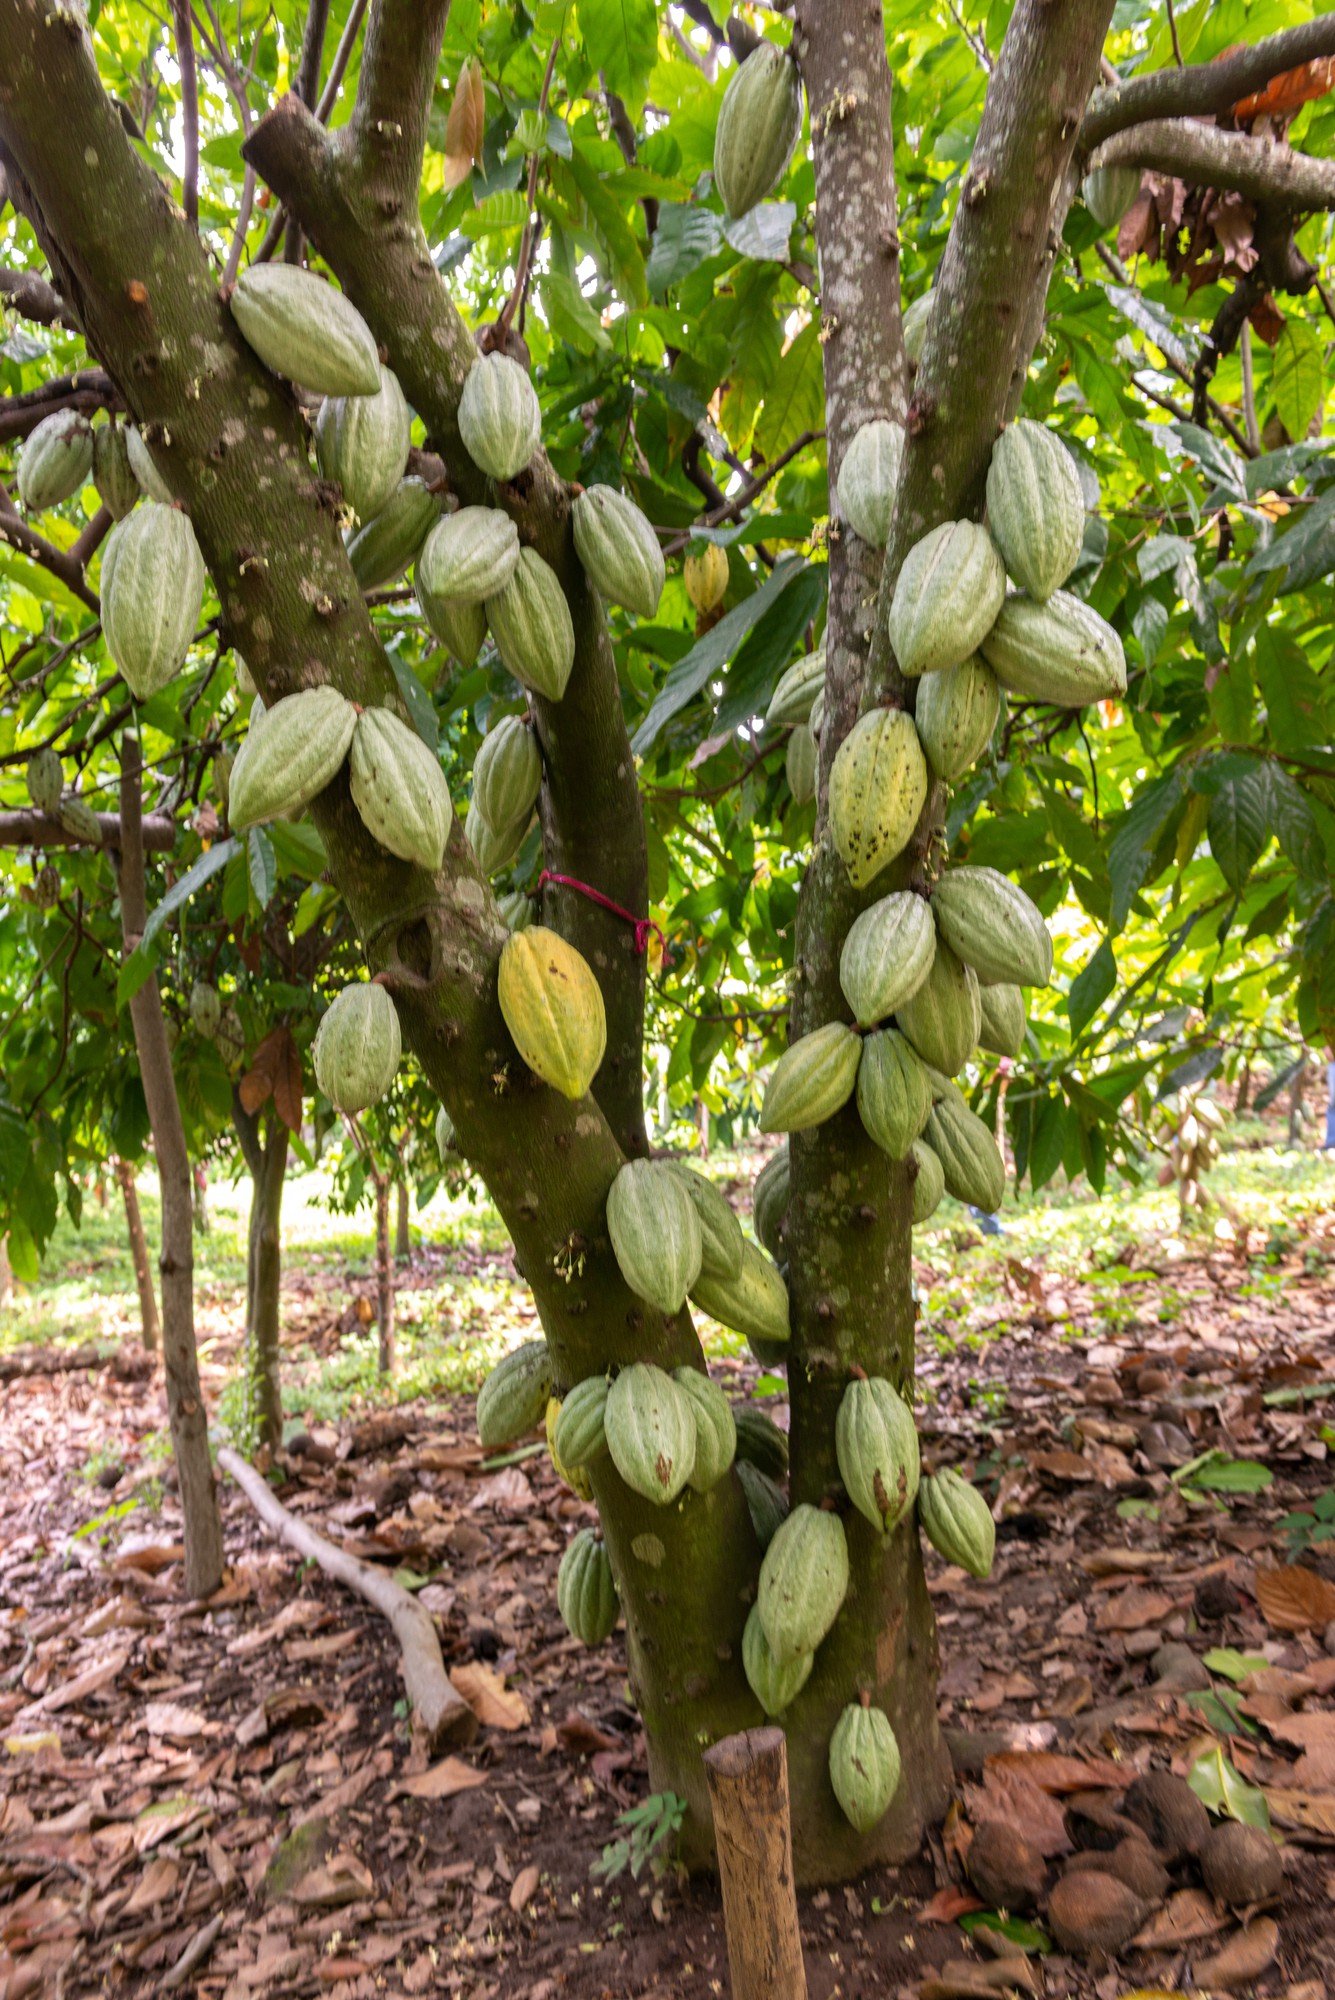 foto-de-foco-seletivo-vertical-de-theobroma-cacao-crescendo-em-uma-arvore-se-preparando-para-se-tornar-chocolate.jpg